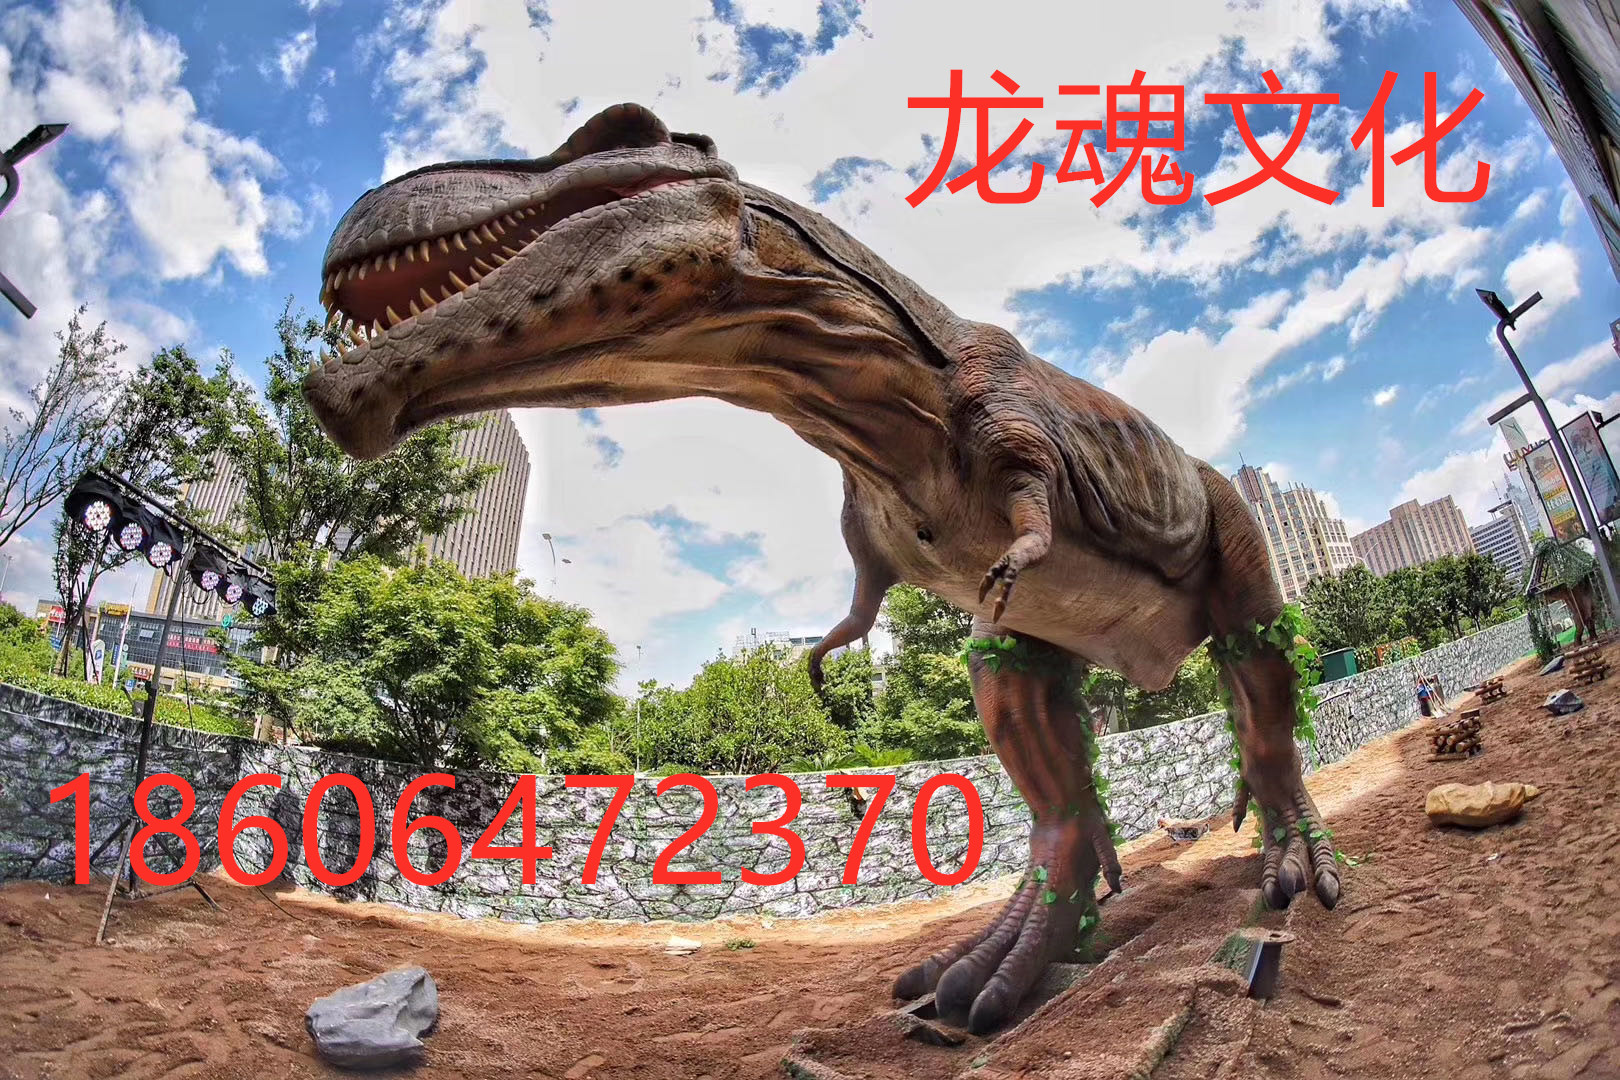 仿真恐龙出租厂家 上海龙魂文化专业团队造就质量的保证图片